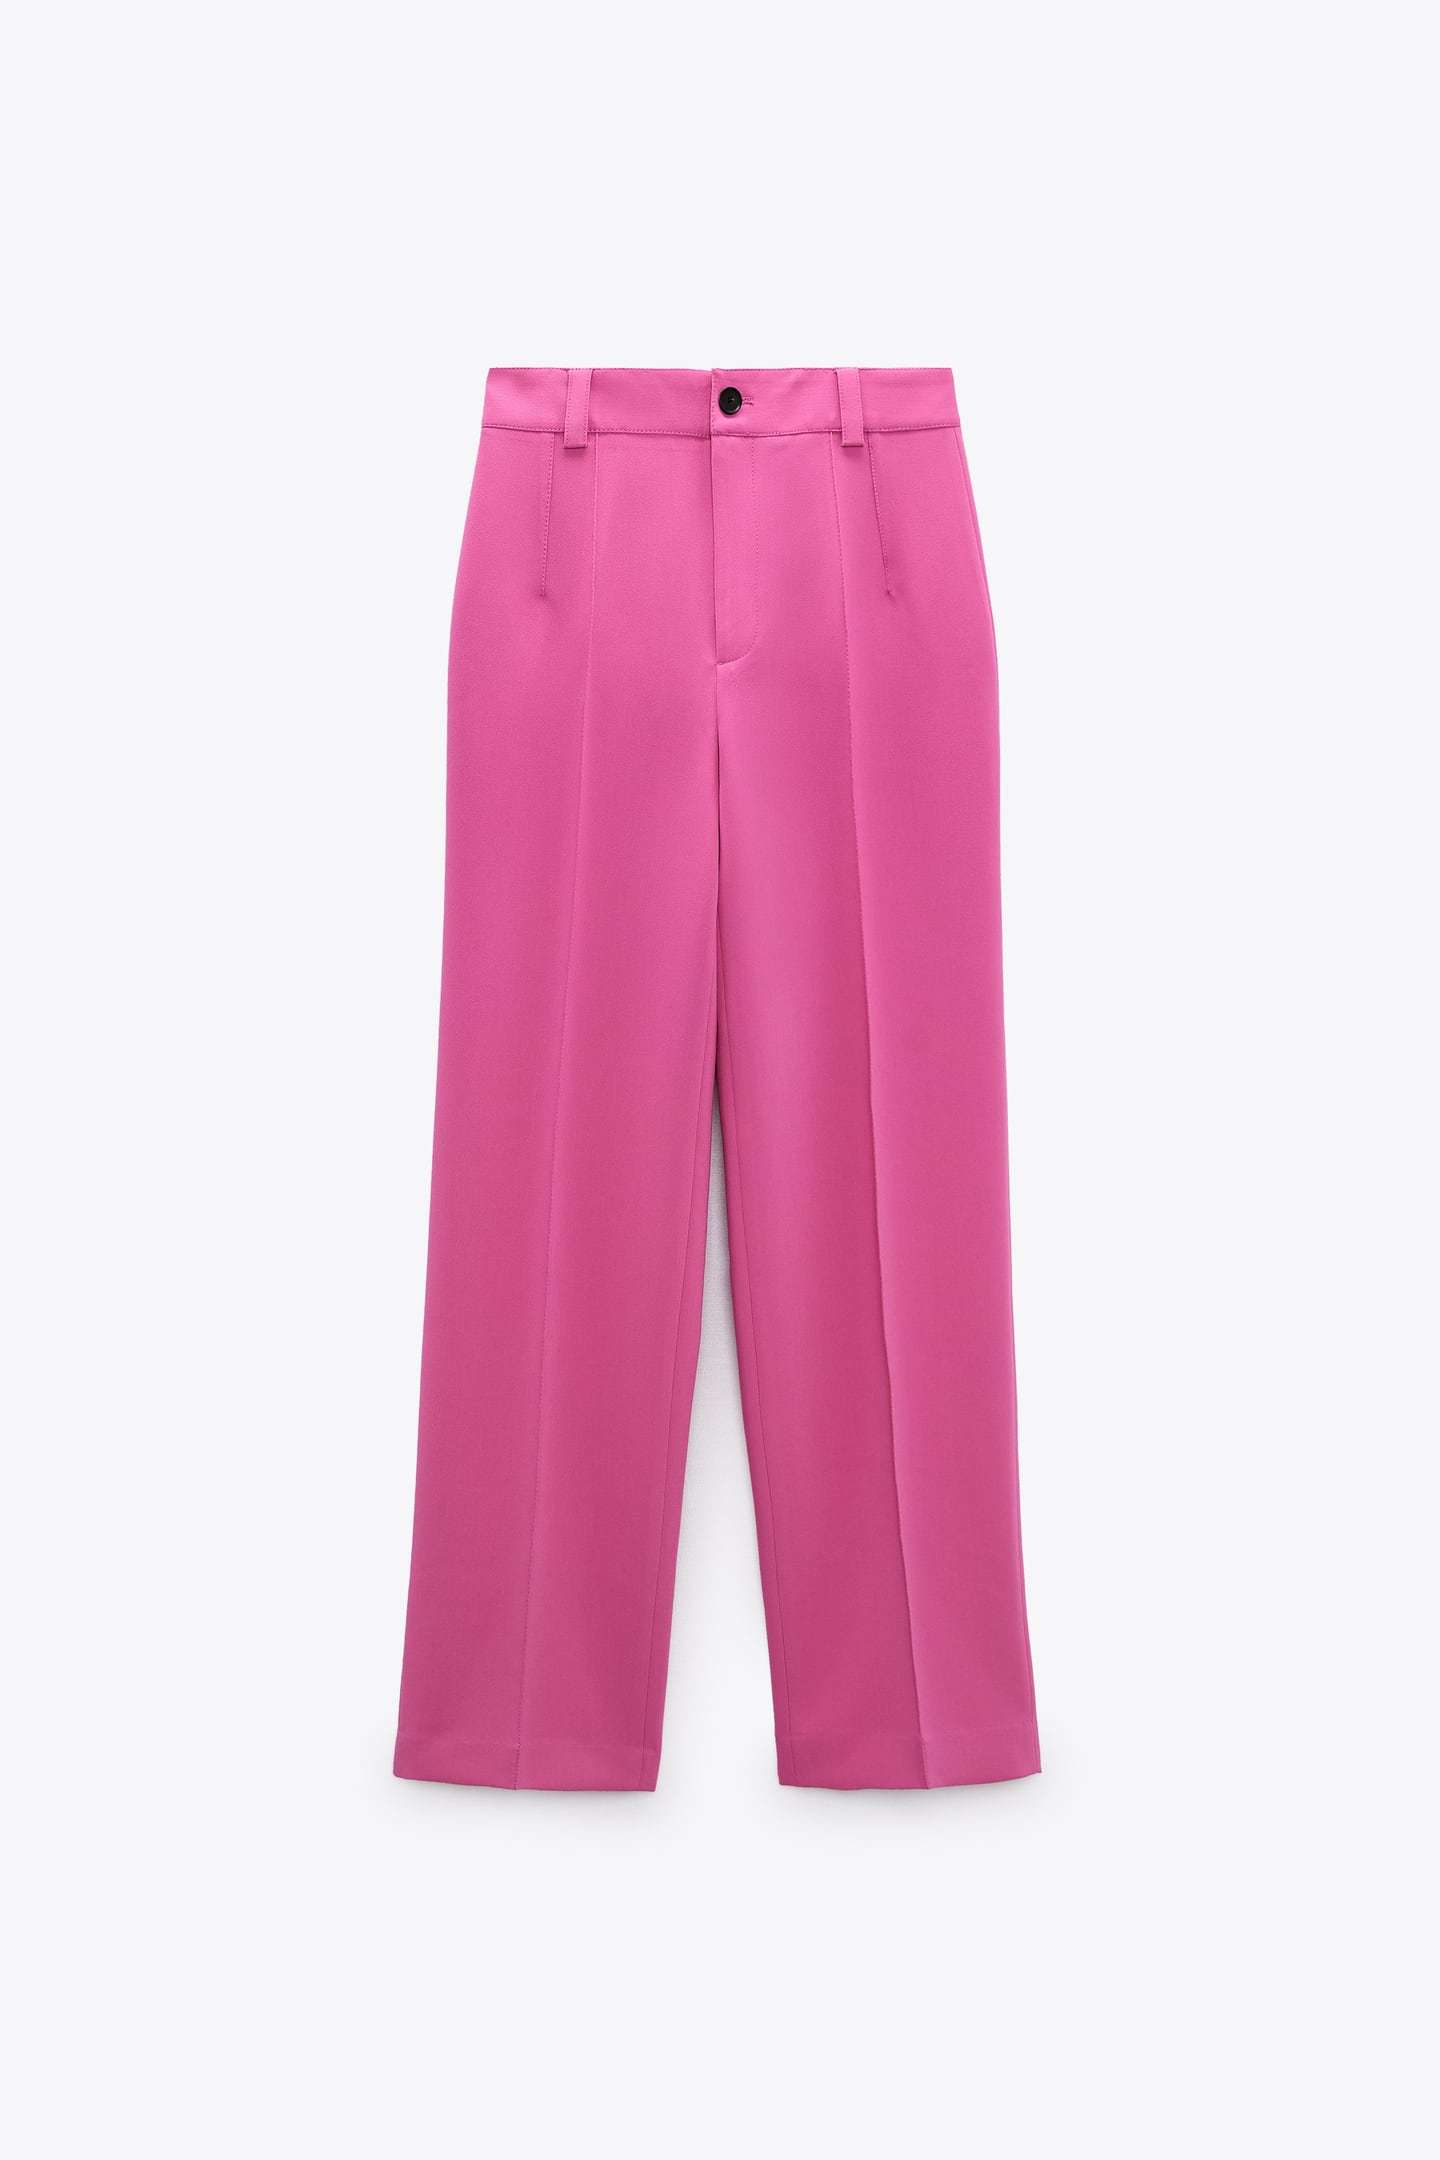 Pantalón rosa de Zara.